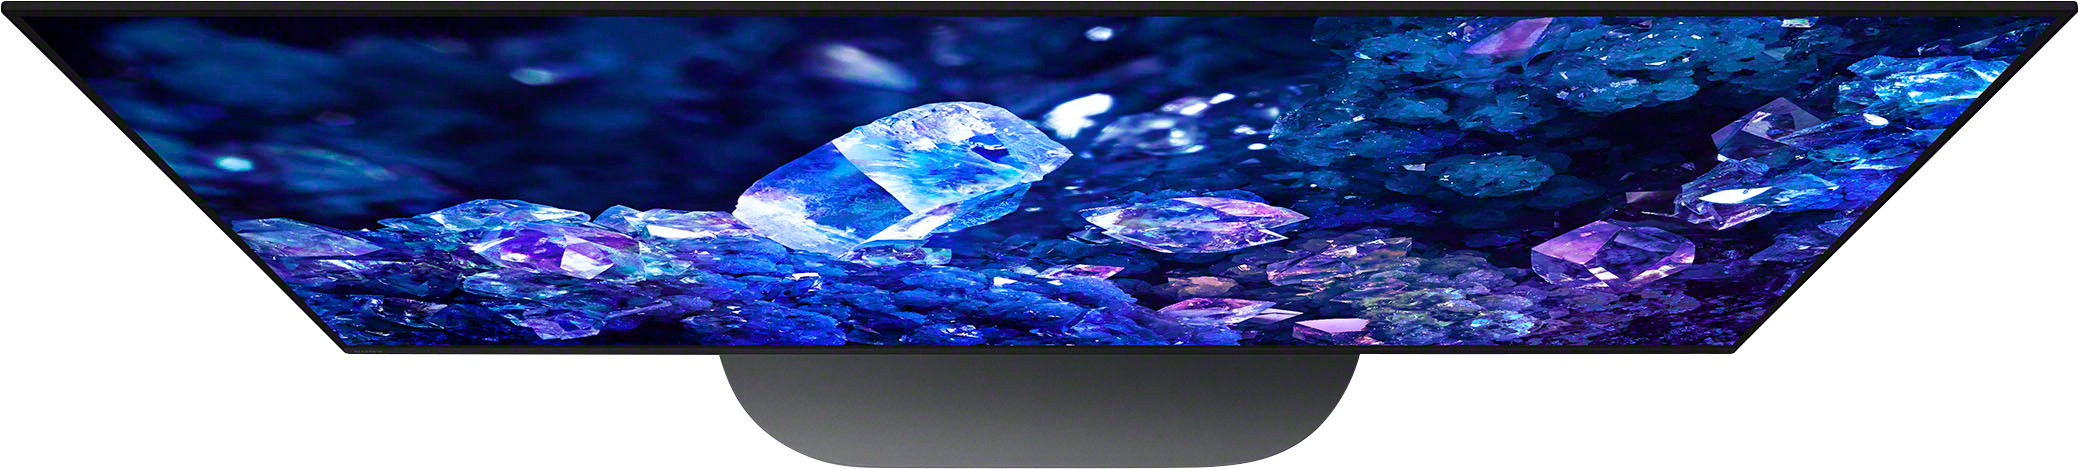 Sony 42 Class BRAVIA XR A90K OLED 4K UHD Smart Google TV XR42A90K - Best  Buy